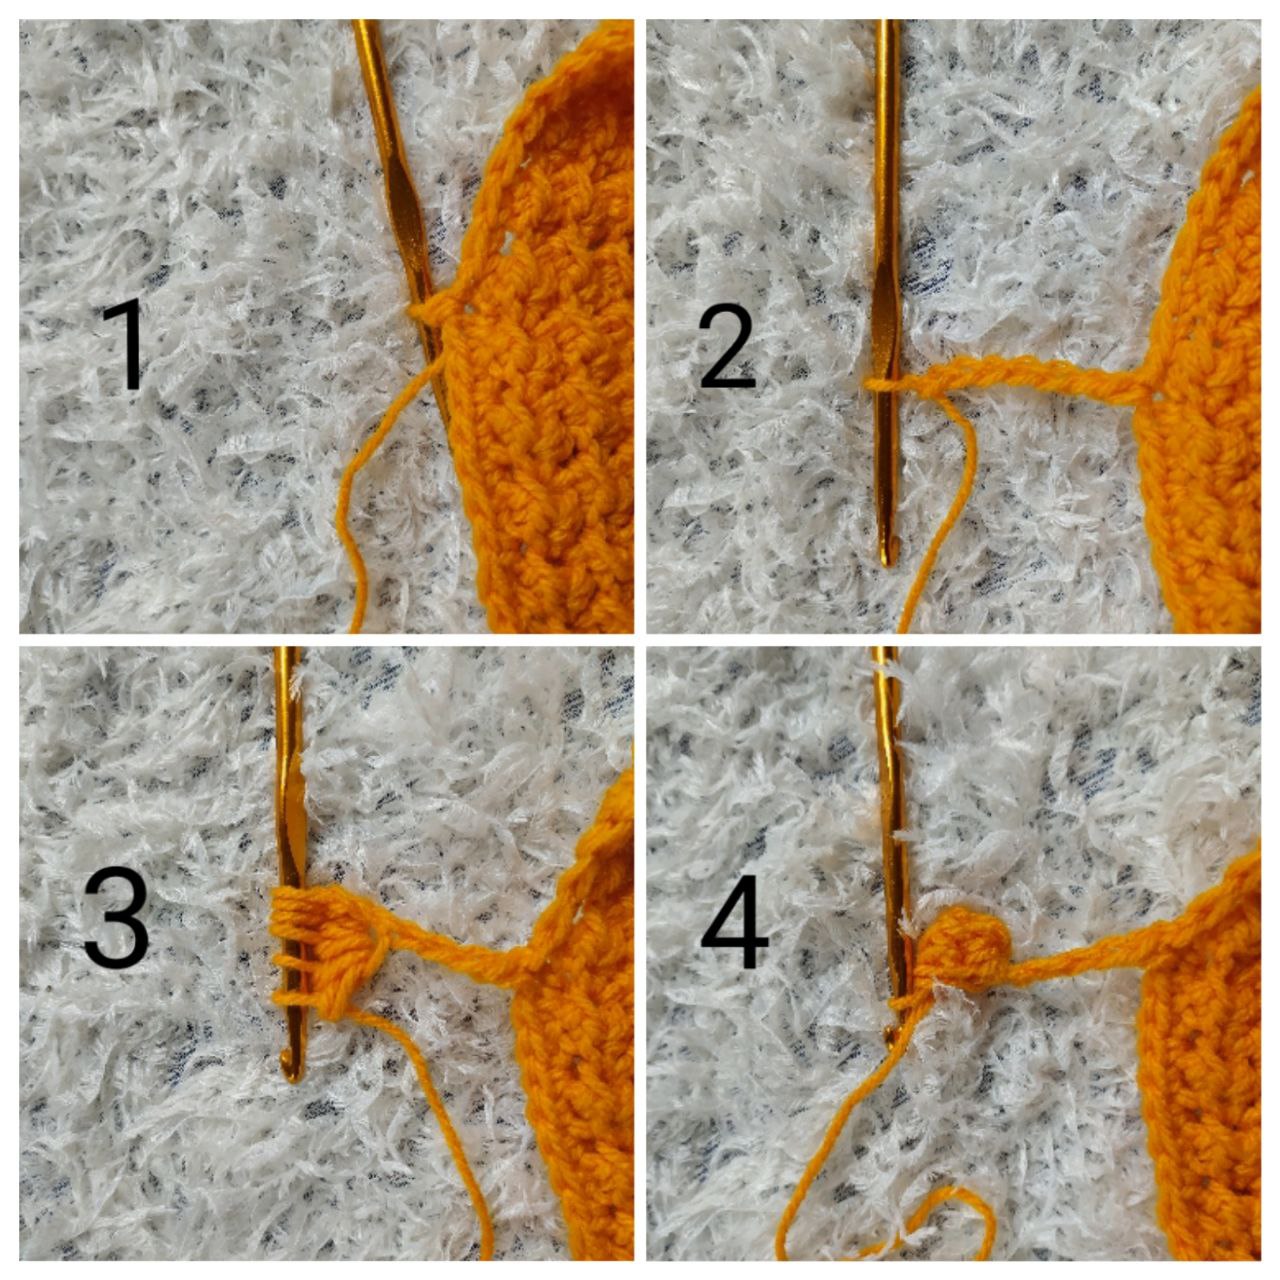 easy crochet cowl pattern